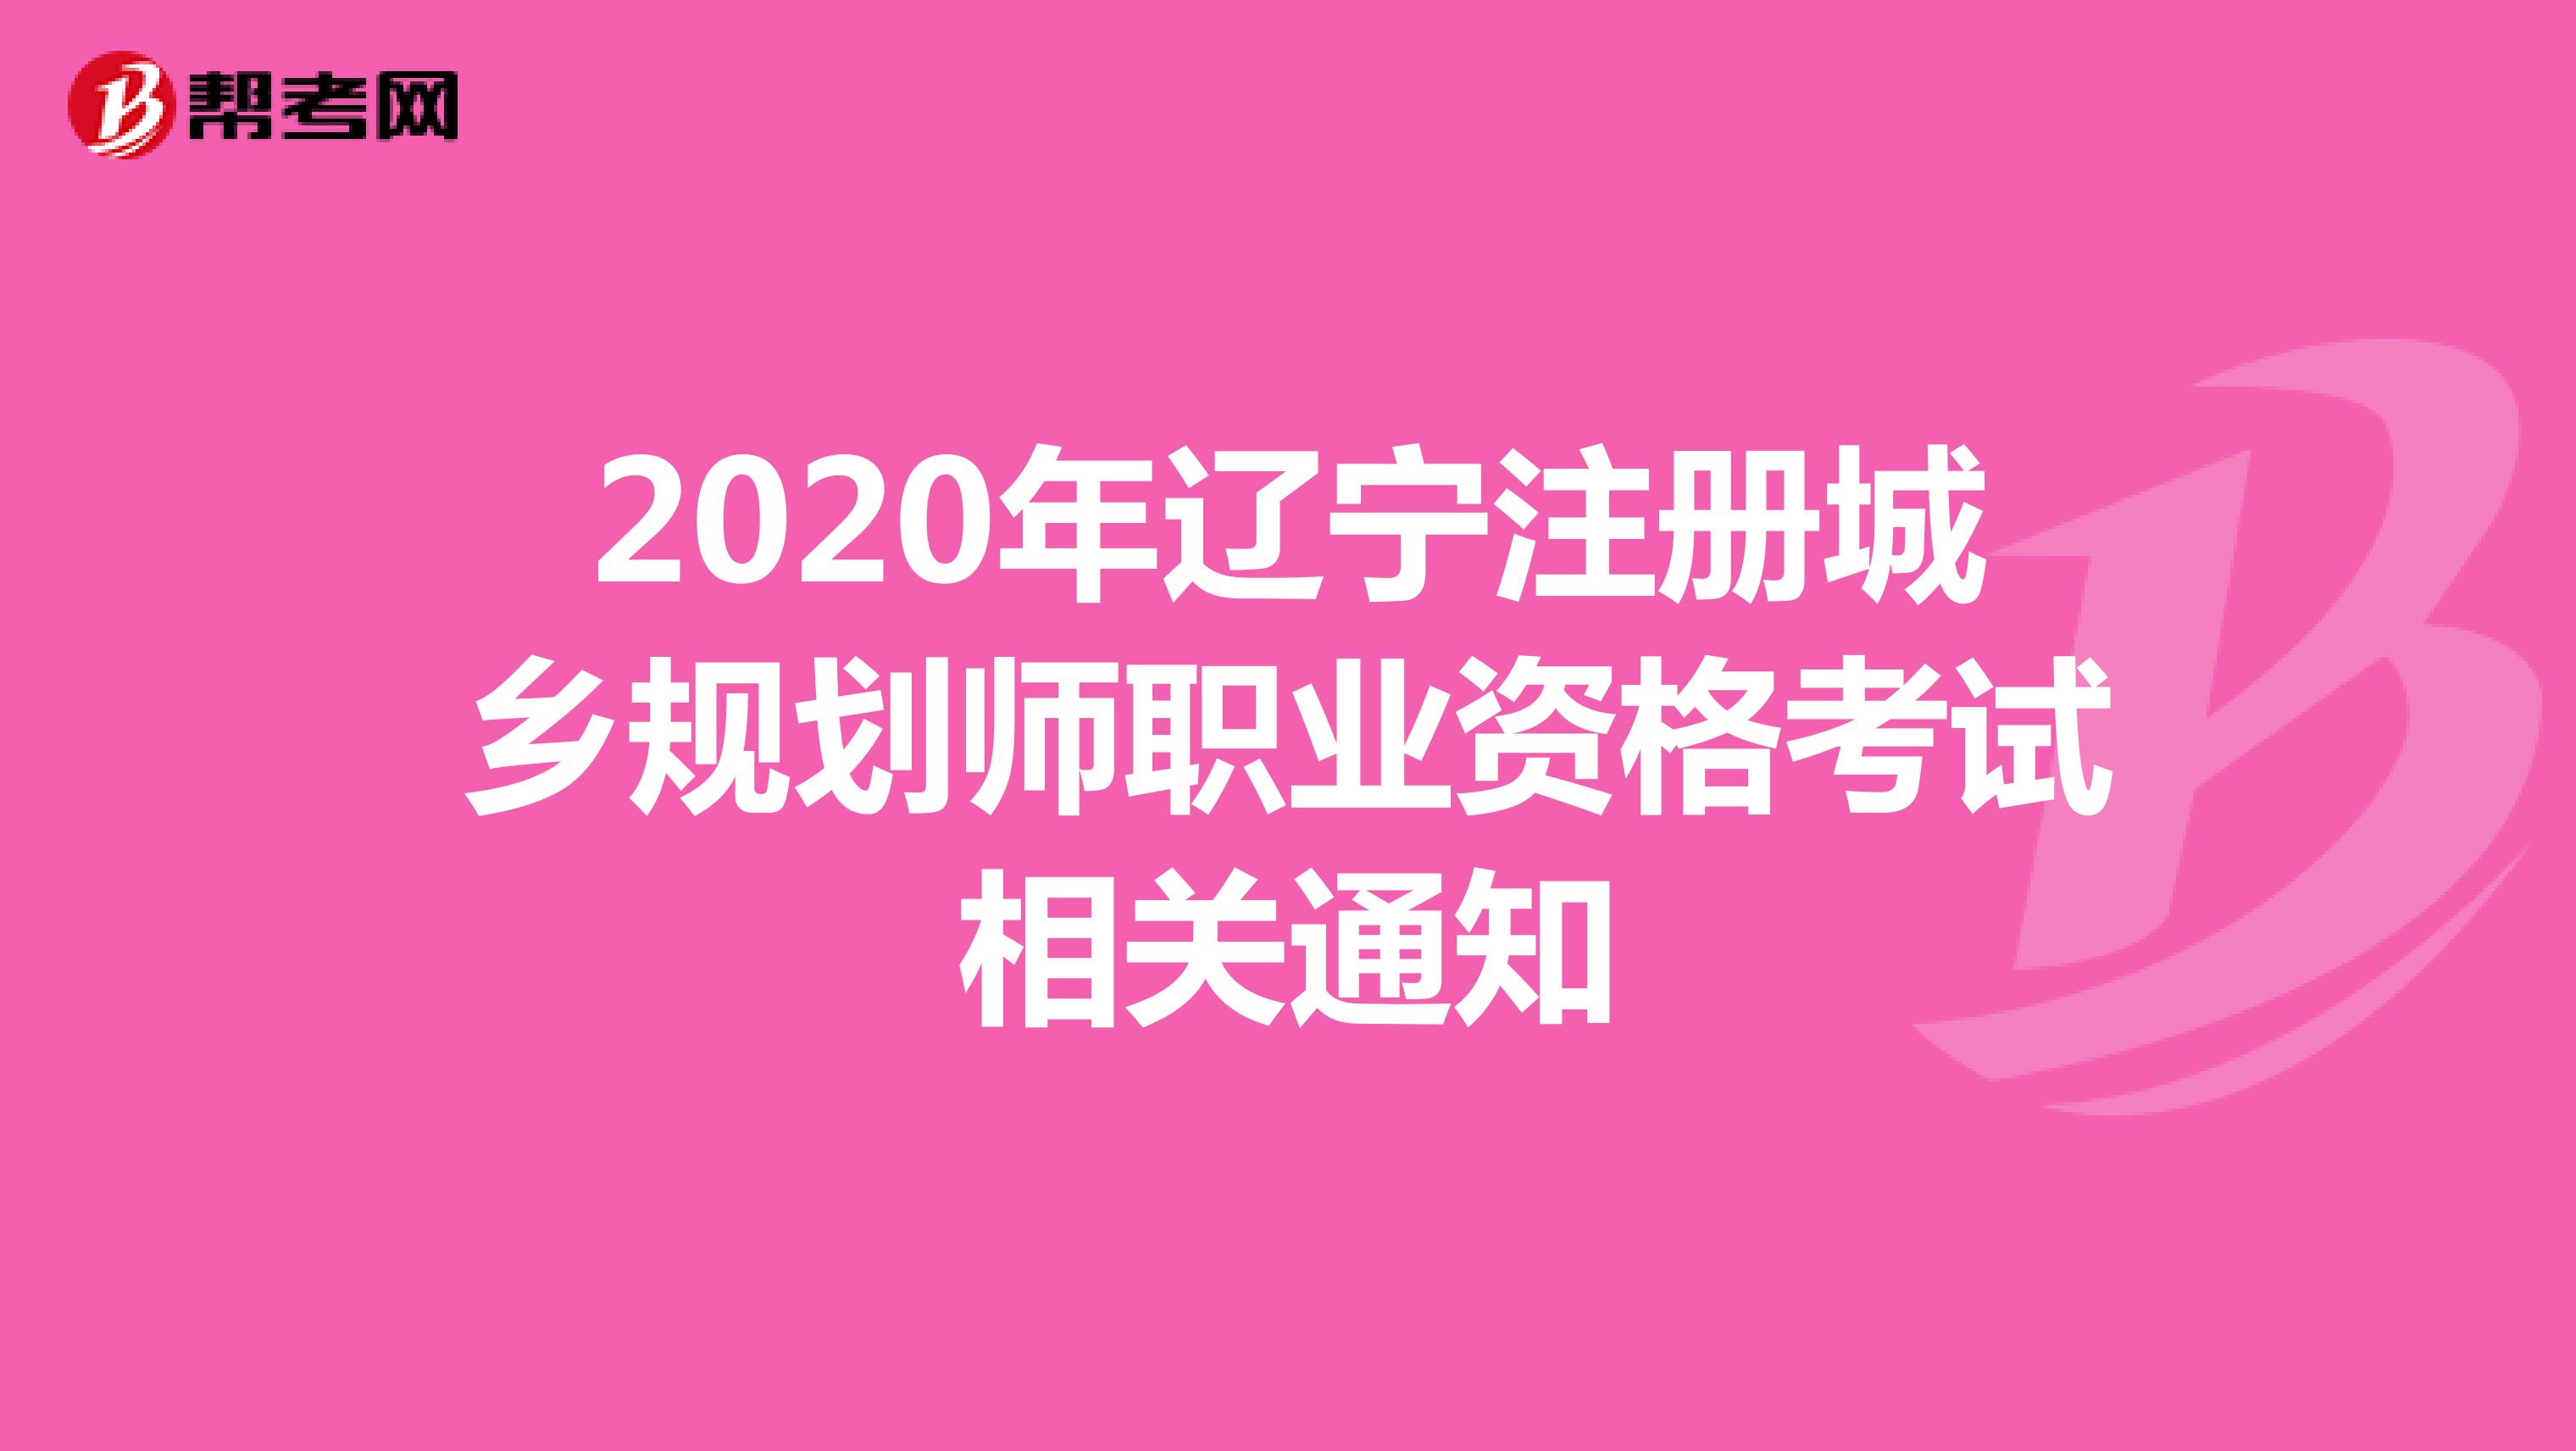 2020年辽宁注册城乡规划师职业资格考试相关通知